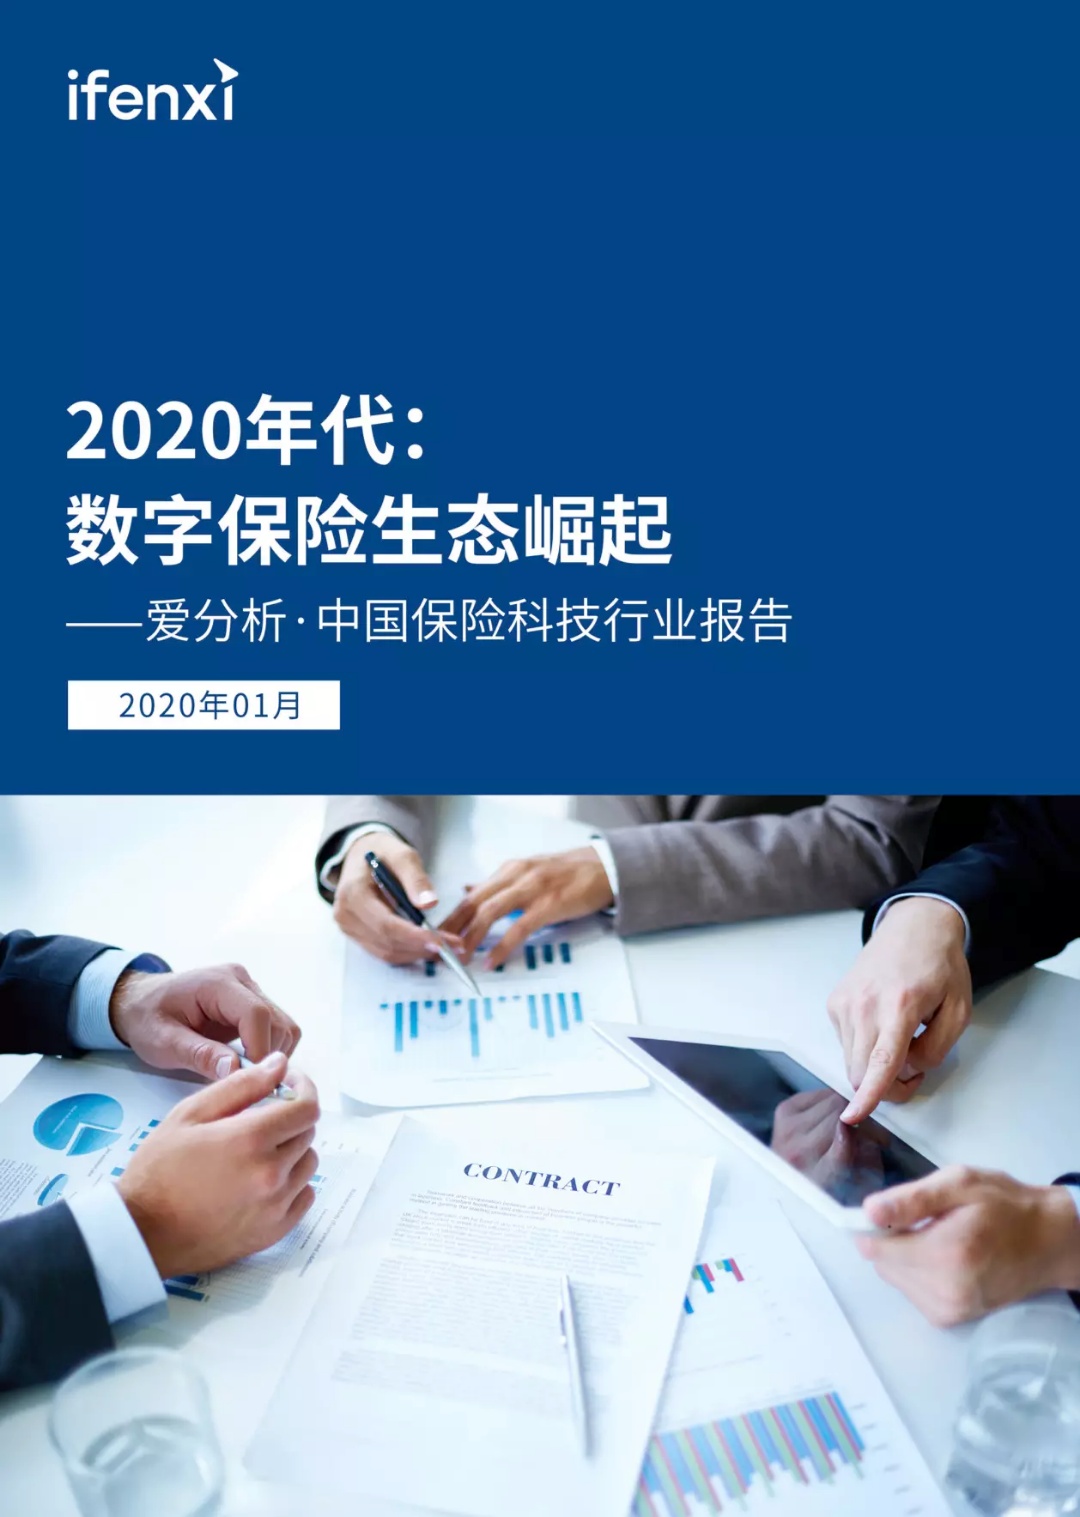 2020年代：数字保险生态崛起 | 爱分析报告-爱分析ifenxi